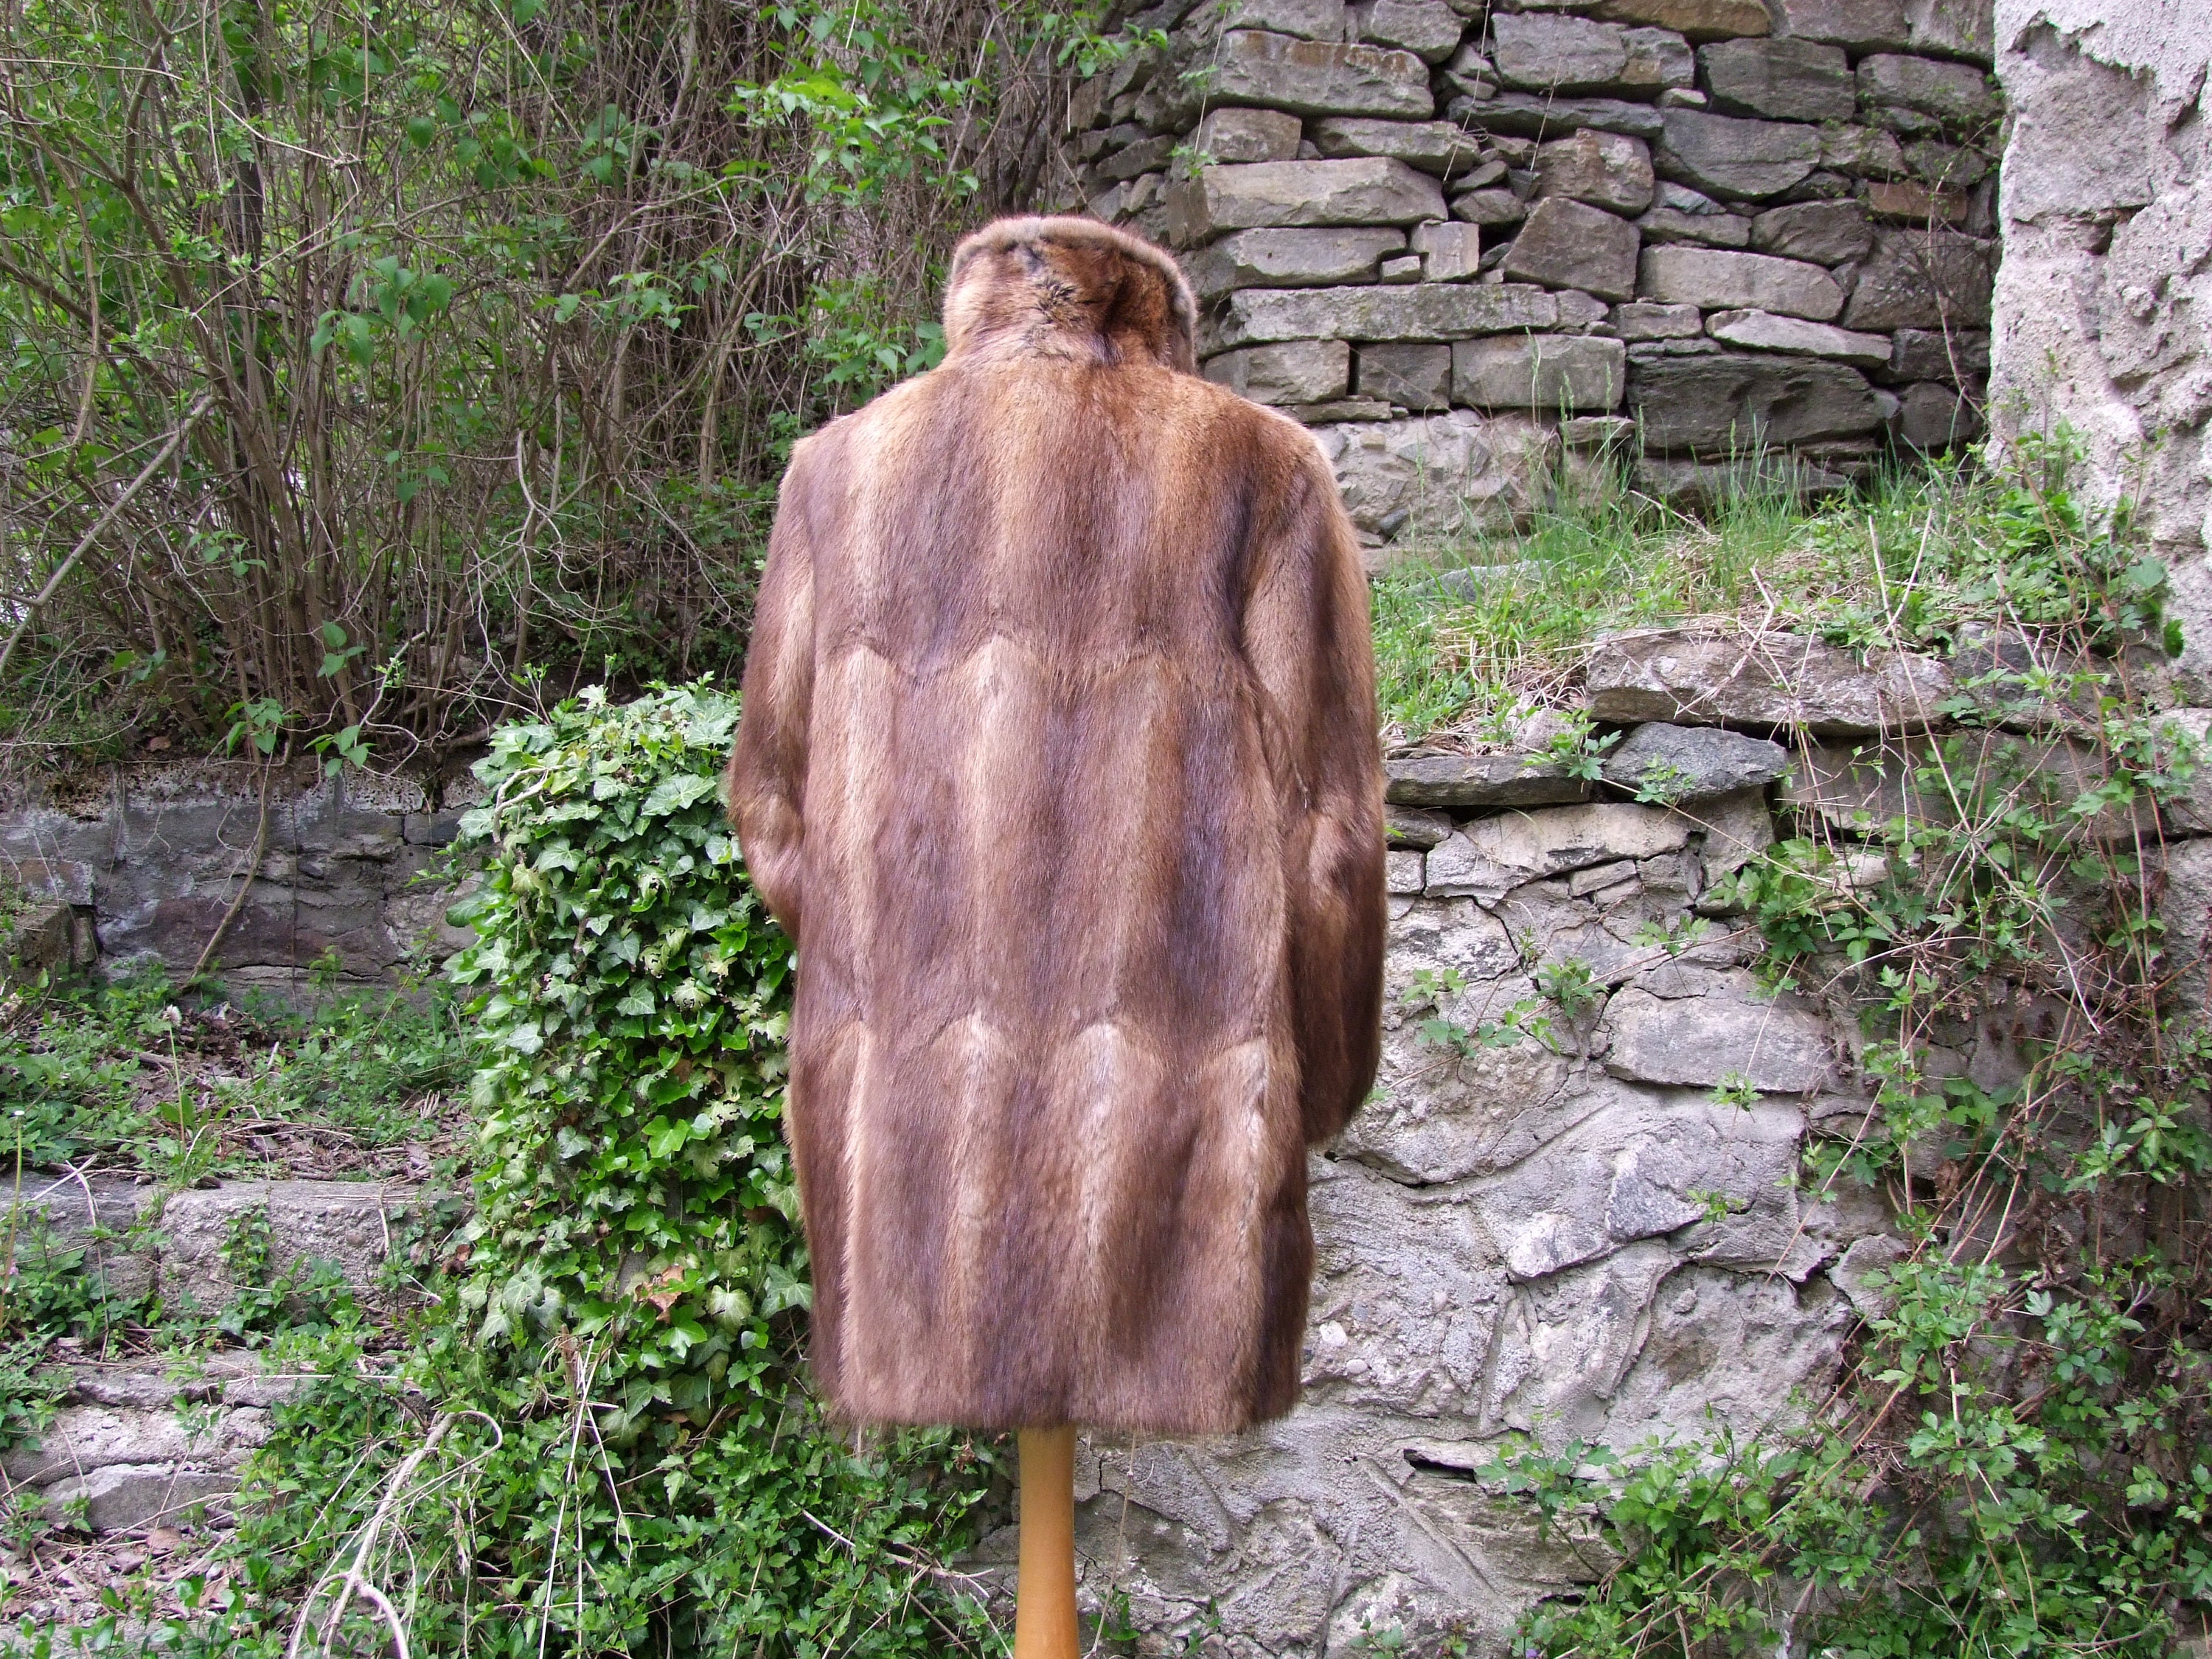 Vintage Mink Coat. Real Fur. Long Mink Coat. Lush Brown. 